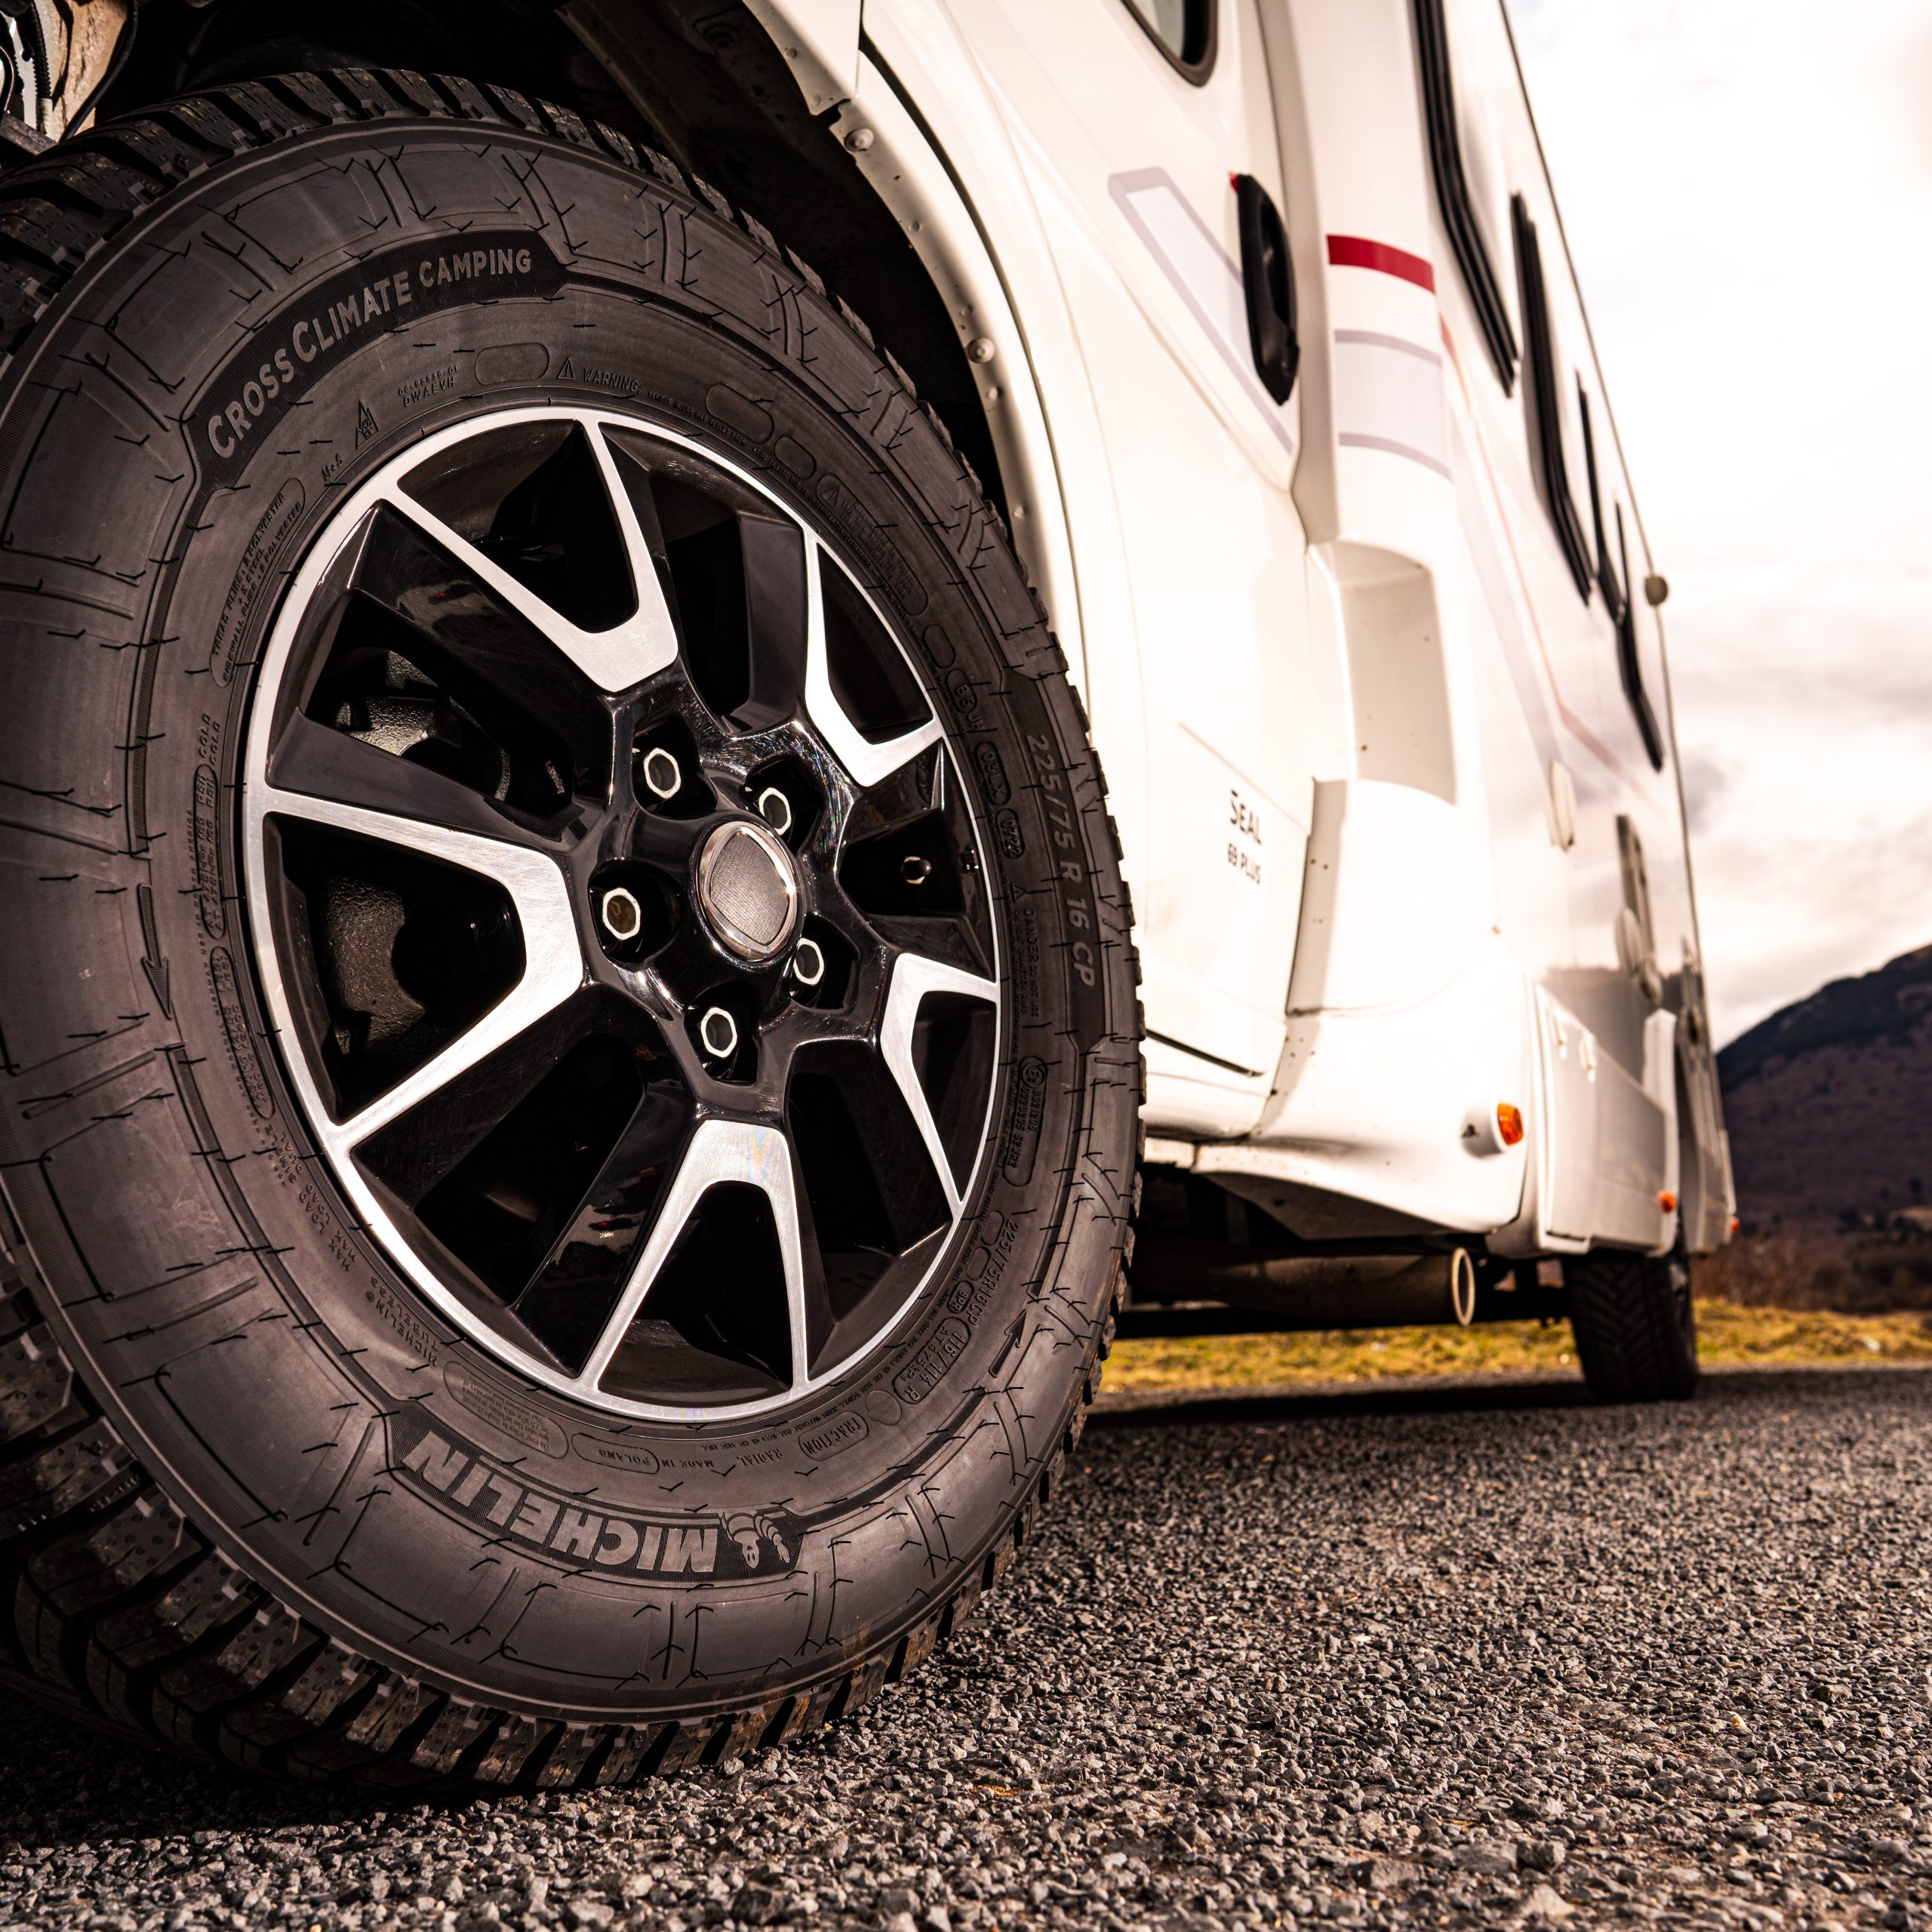 Michelin Camping, el nuevo neumático All Season para autocaravanas - Michelin espacio prensa